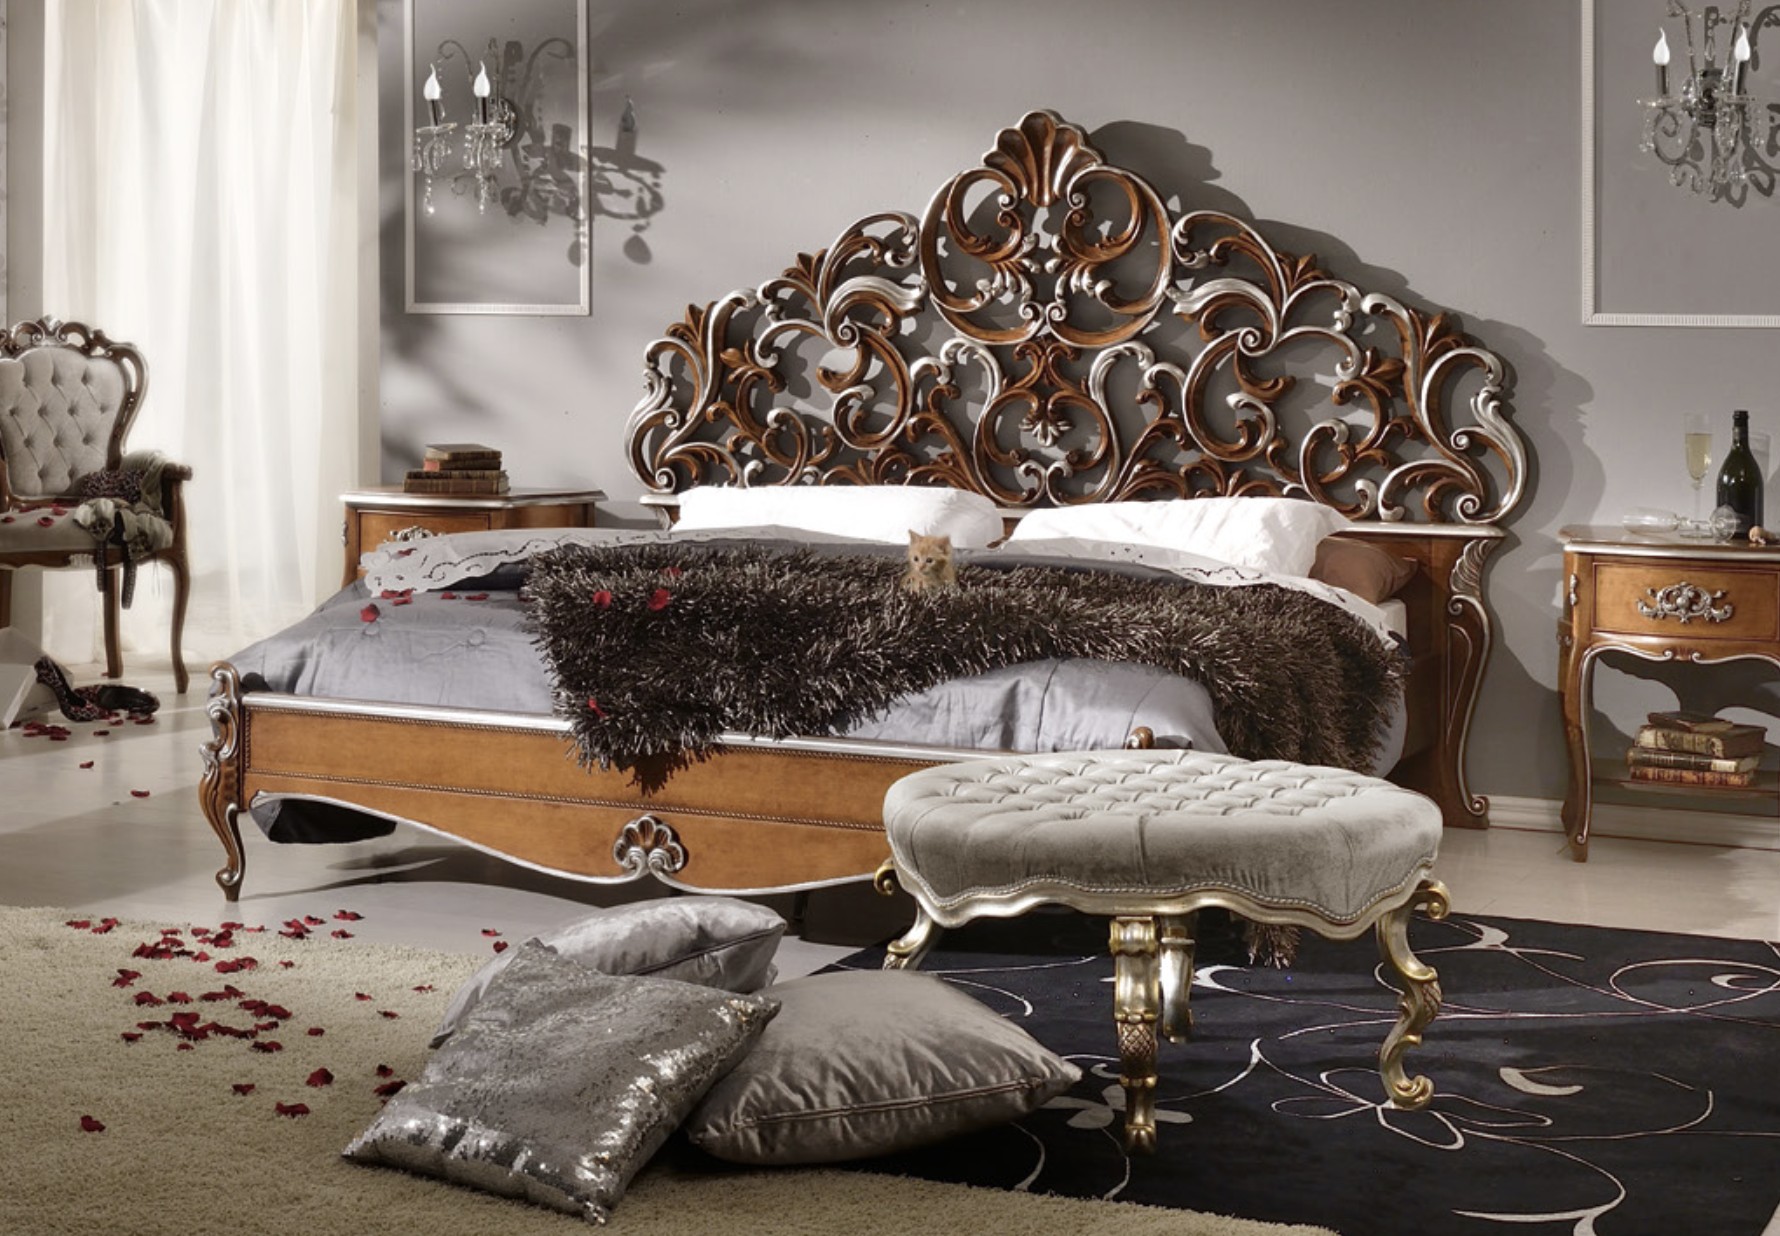 Estila Rustikálna masívna manželská posteľ Belladonna s ornamentálnym vyrezávaným čelom 180x200cm